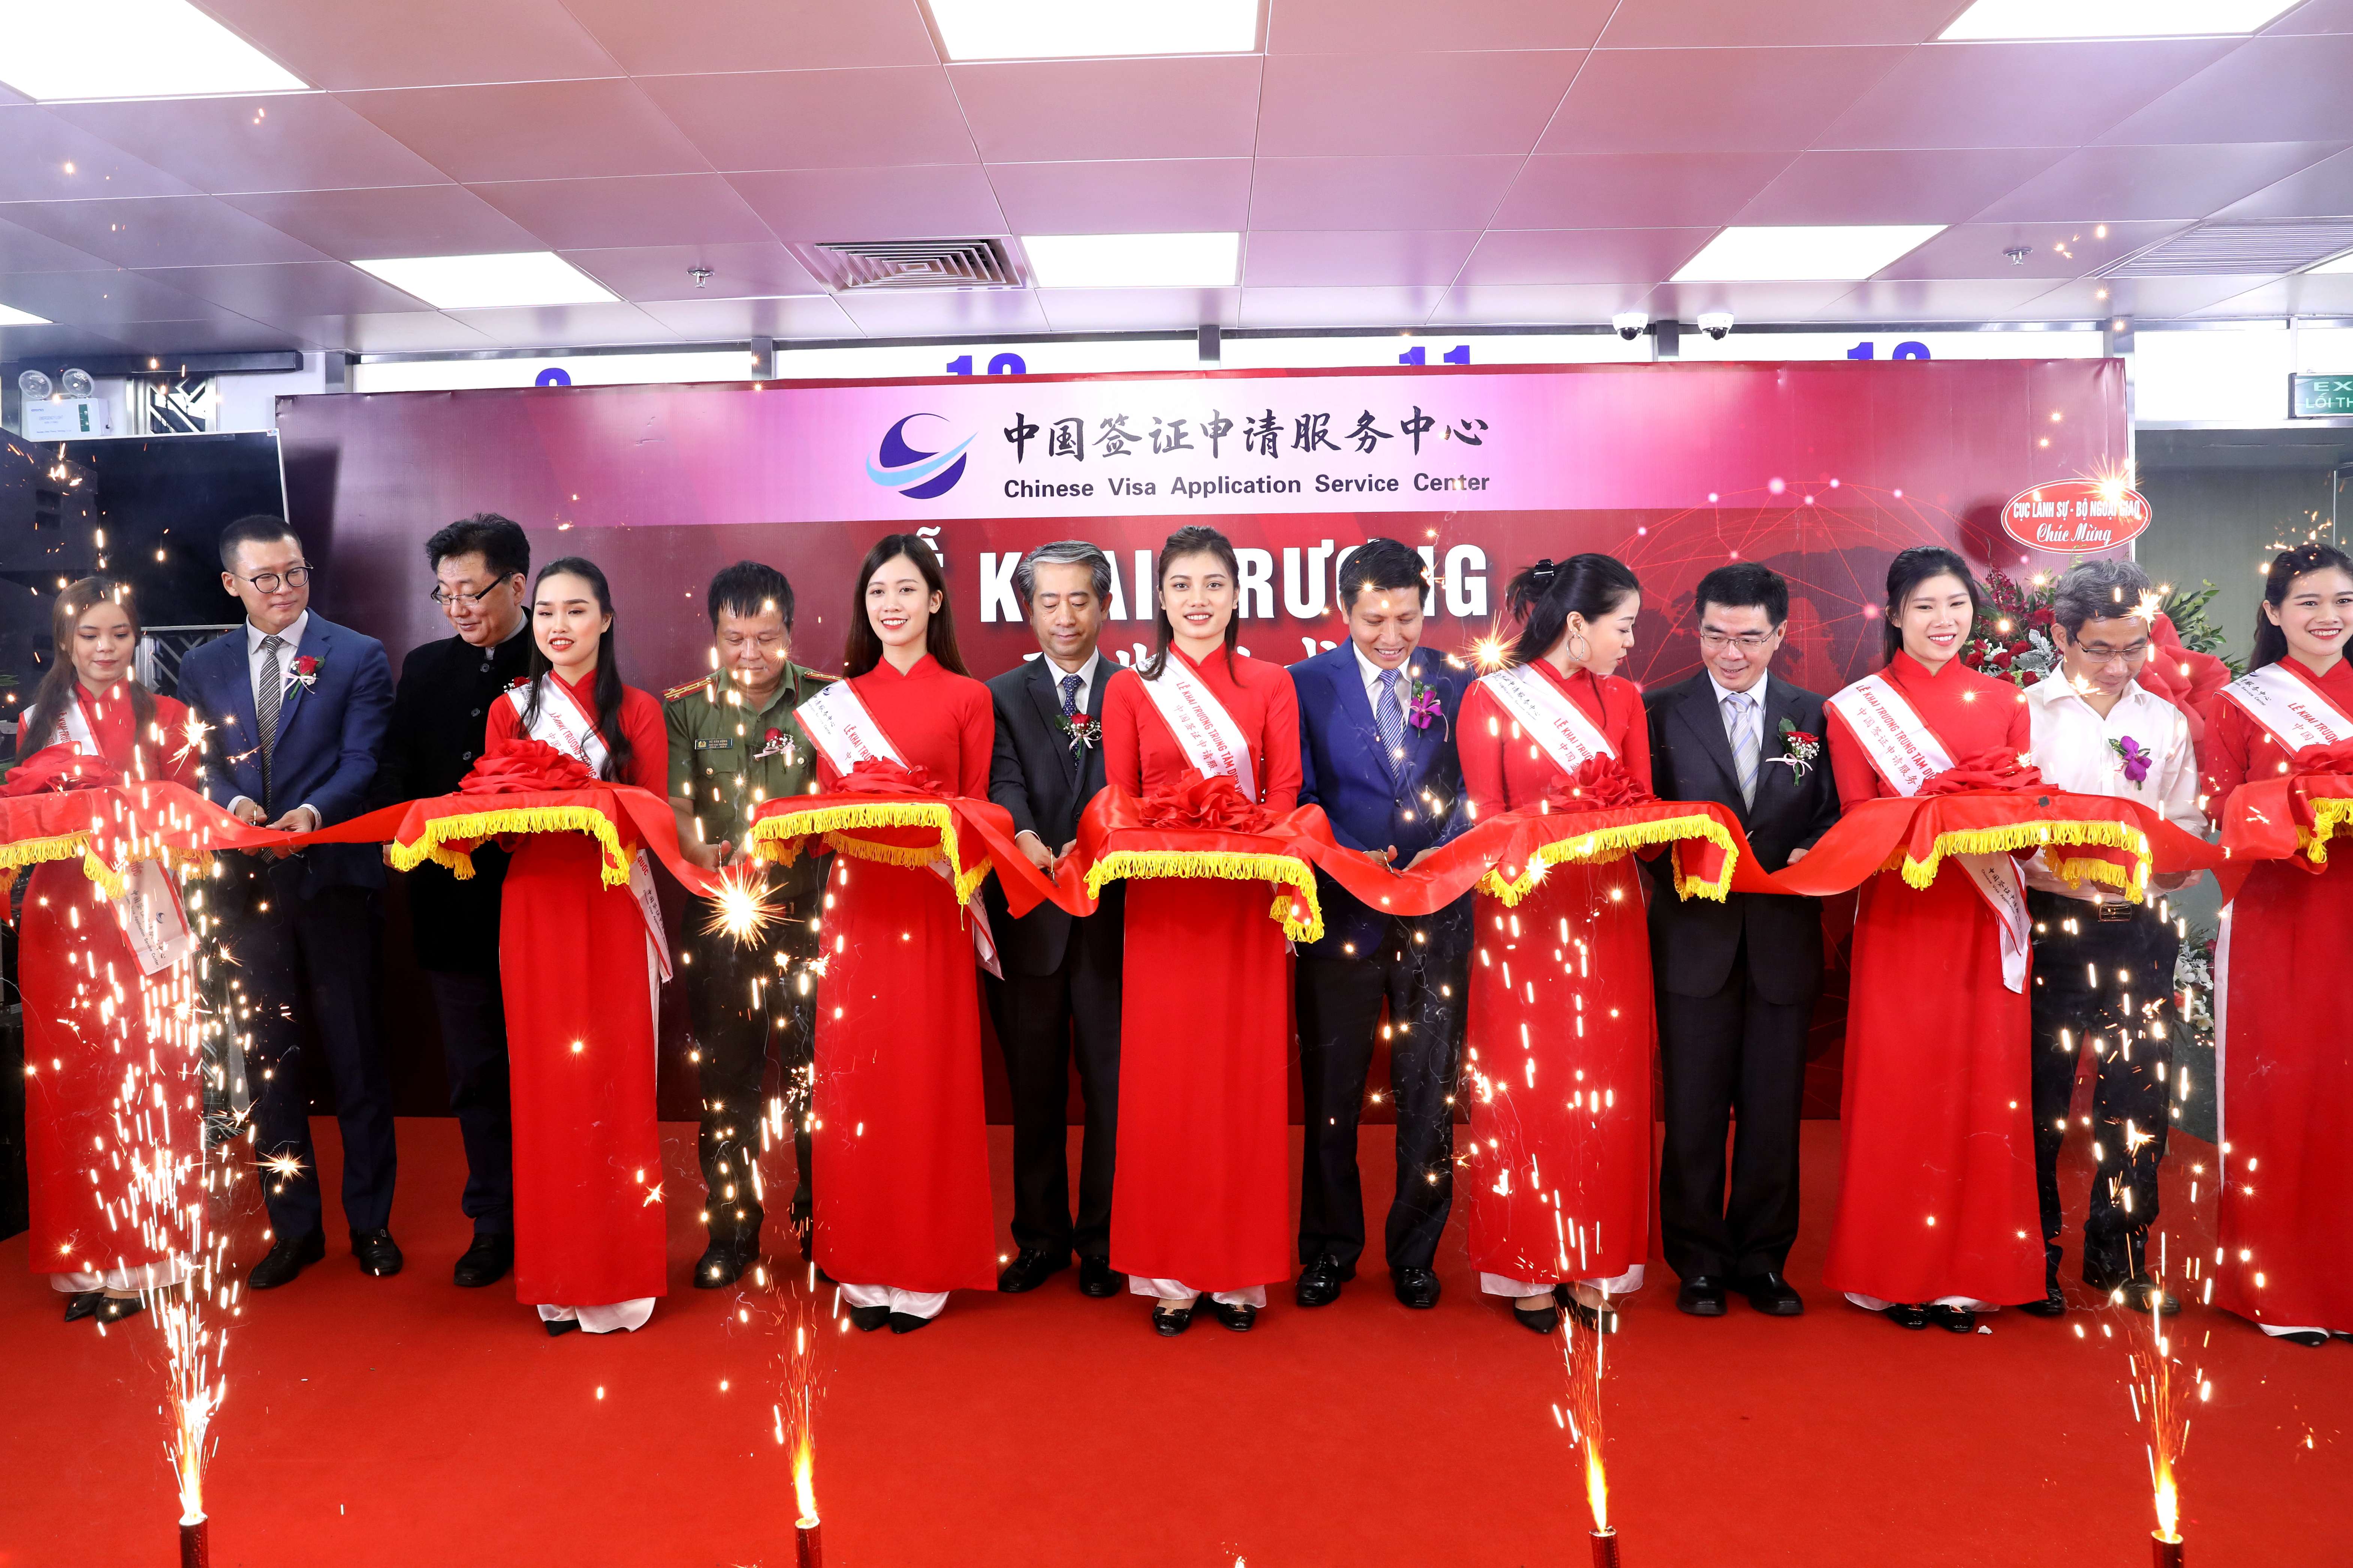 越南首家中国签证申请服务中心开业